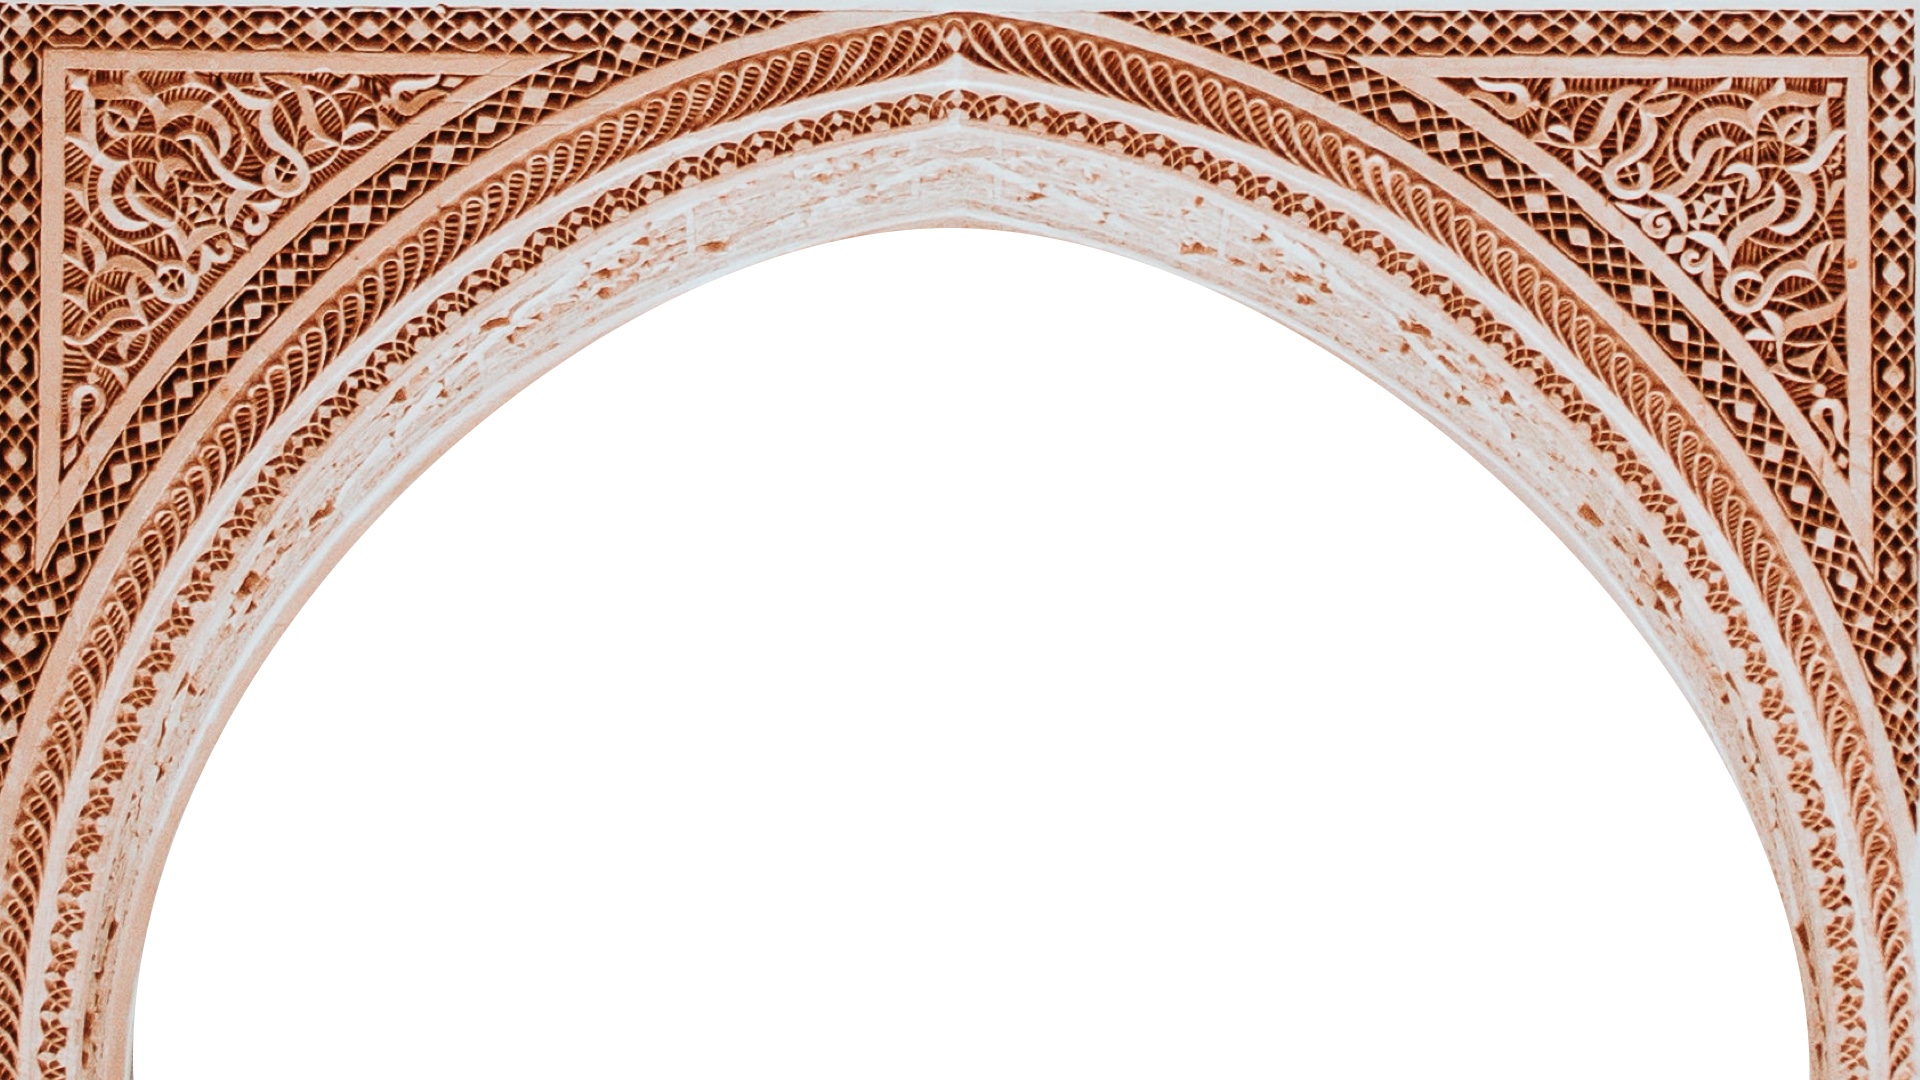 アラベスク模様のアーチ状の枠のバーチャル背景